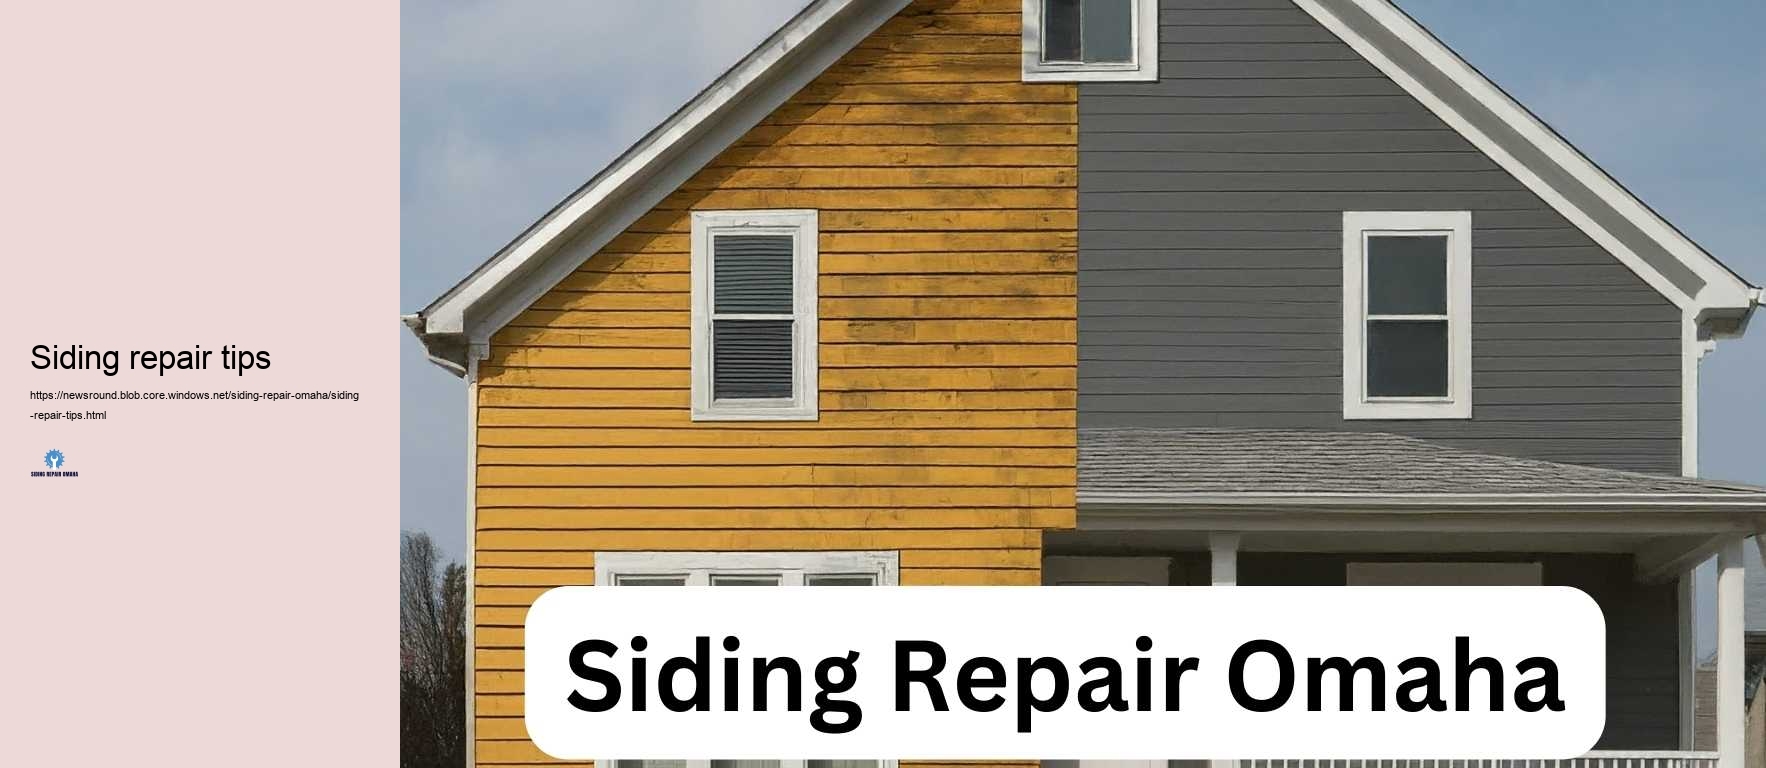 Siding repair tips